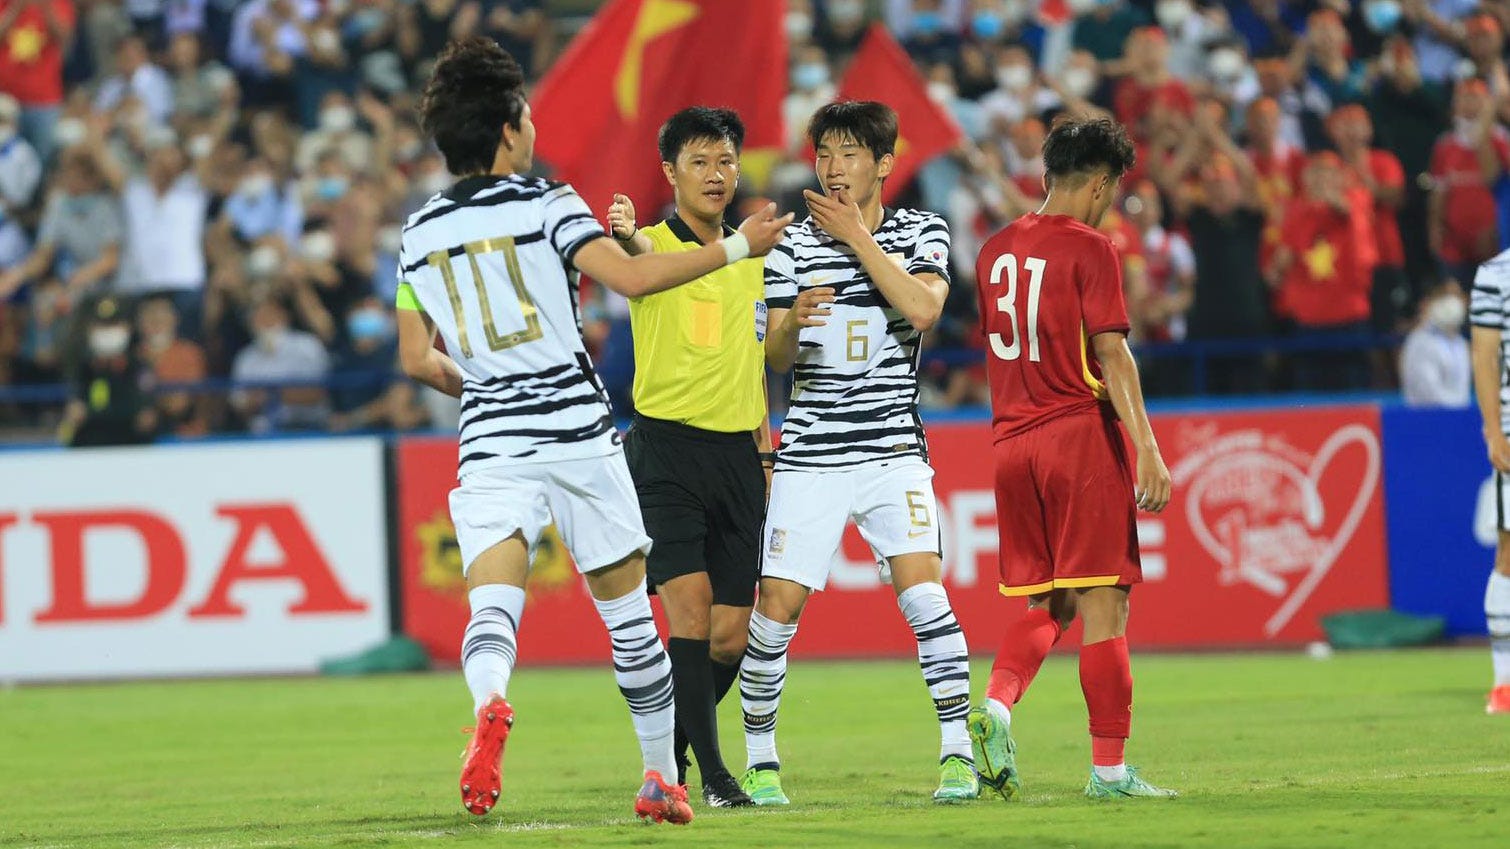 U23 Vietnam U20 South korea 3 